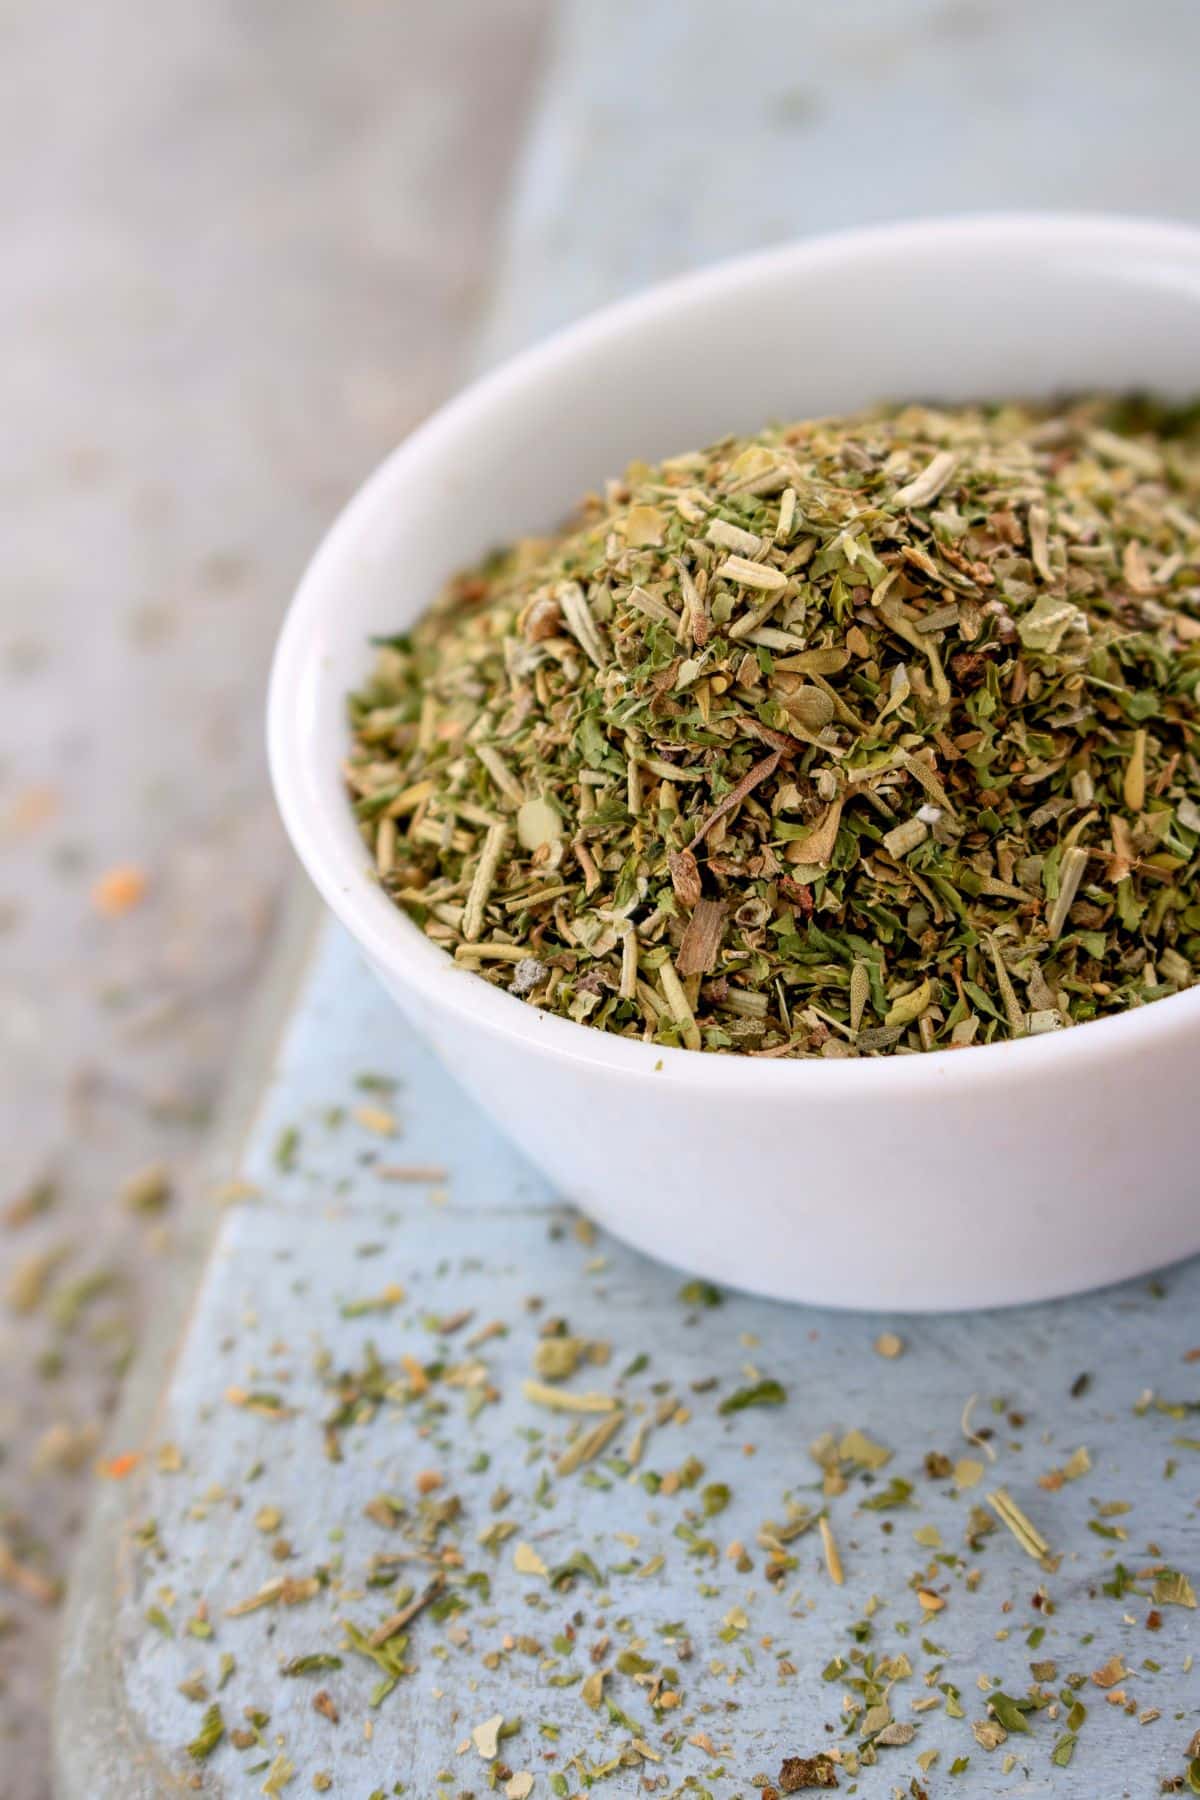 Bowl of dried herbs and seasonings.